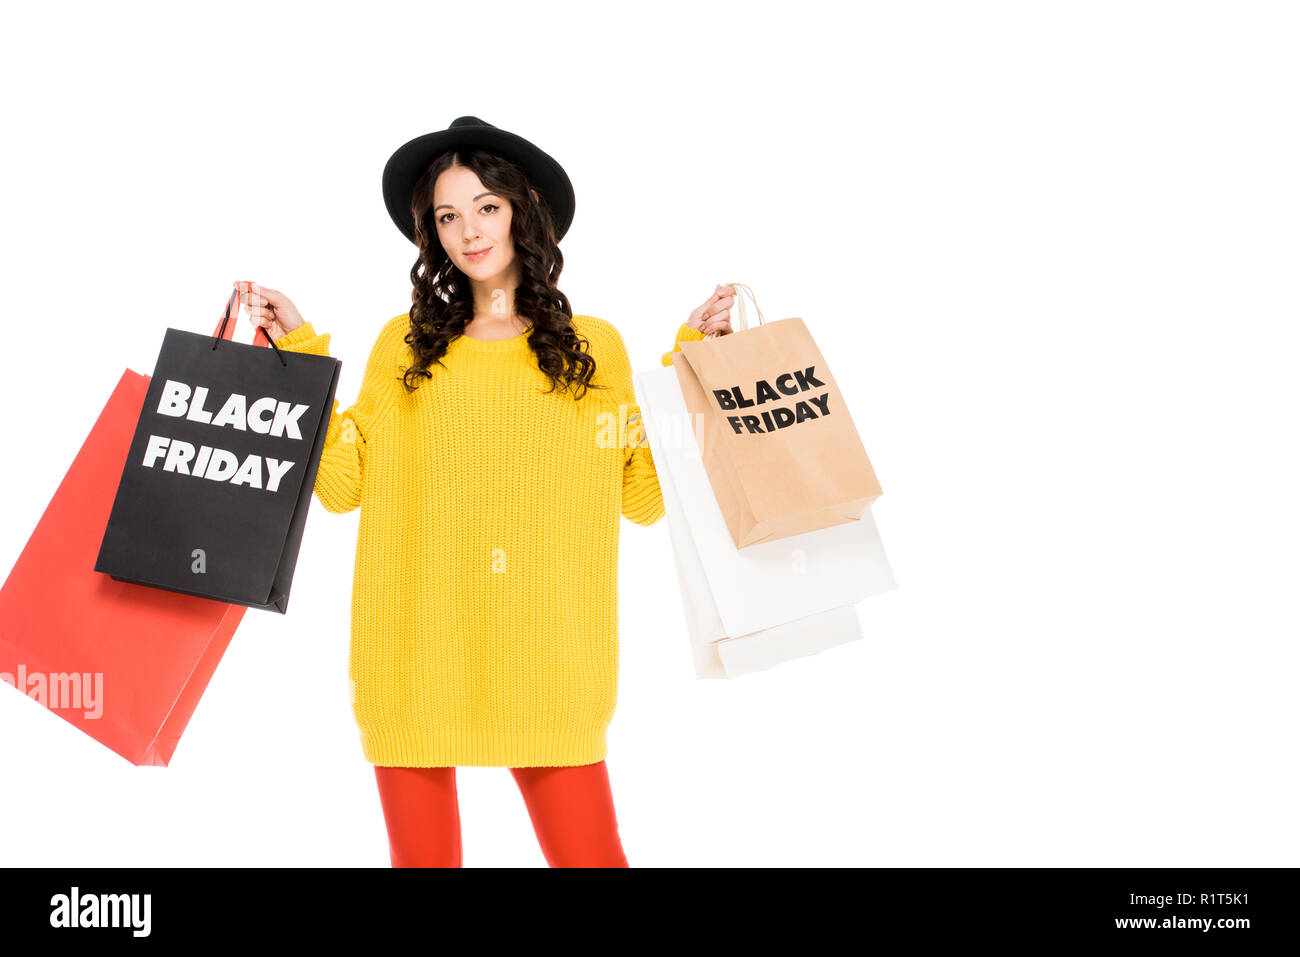 beautiful stylish customer holding shopping bags with black friday symbols, isolated on white Stock Photo